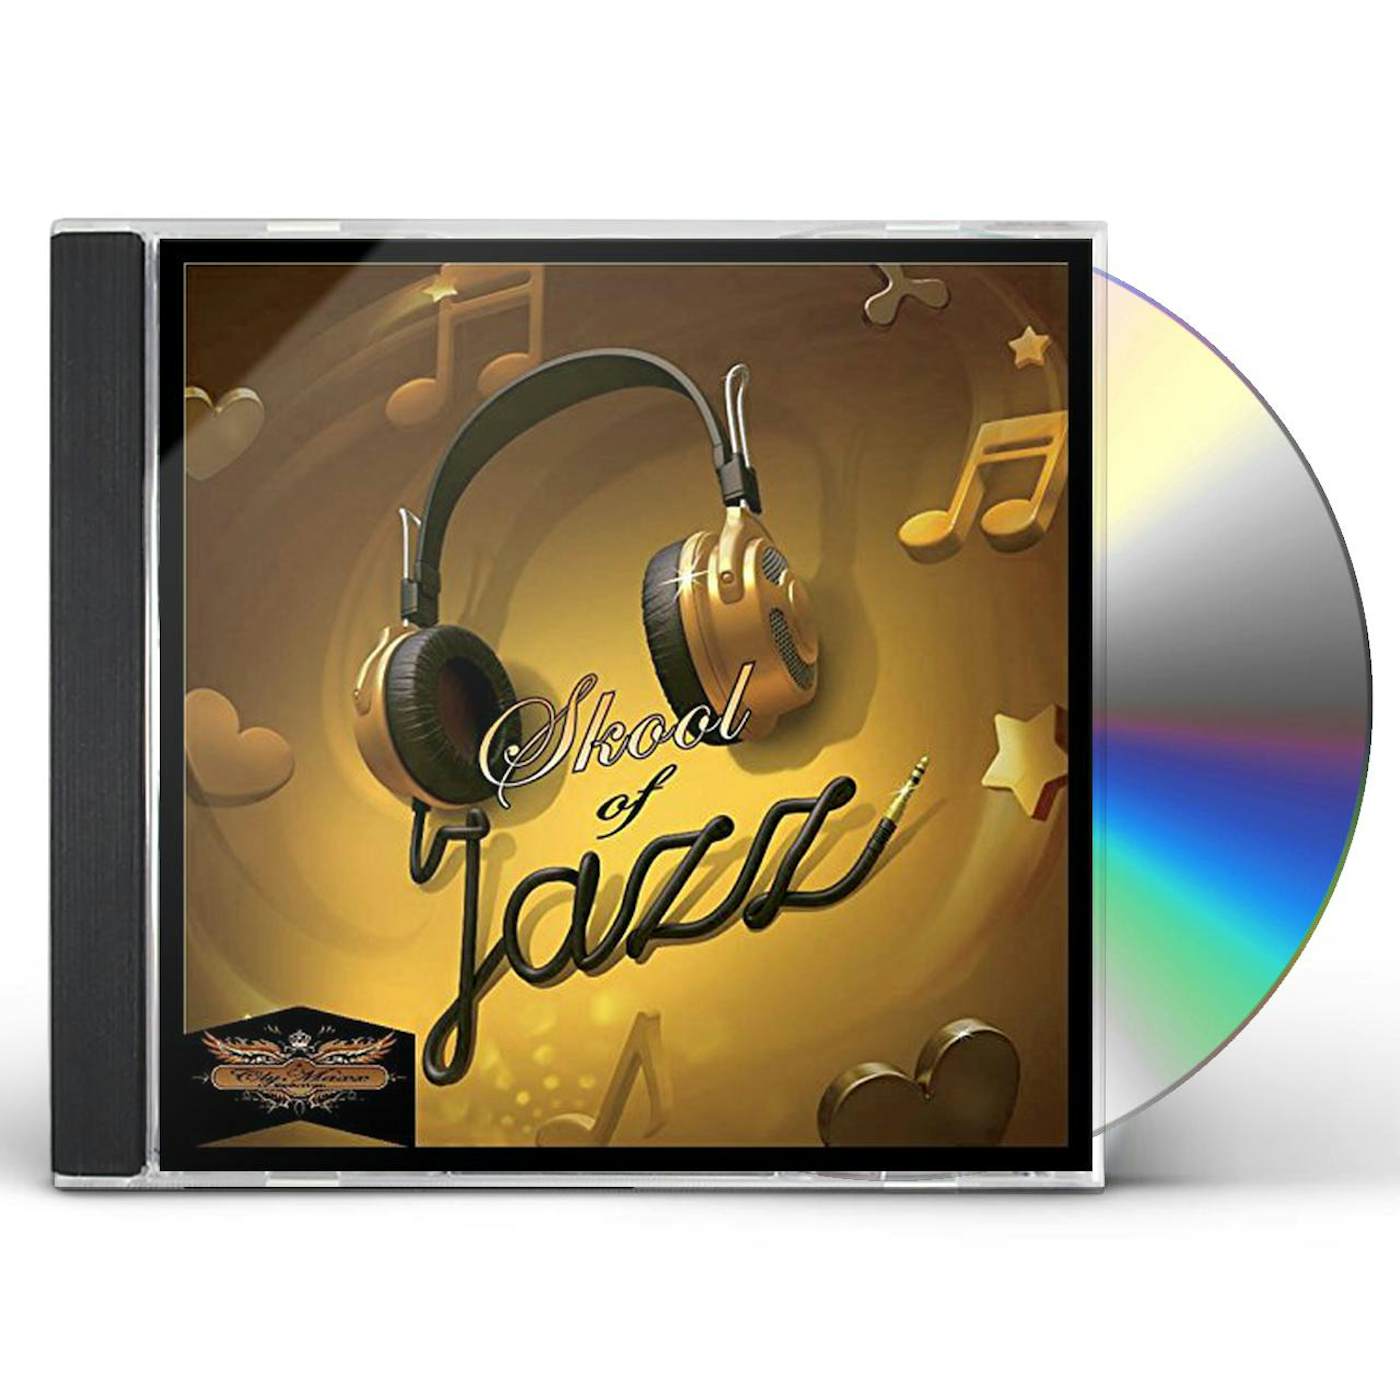 SKOOL OF JAZZ CD